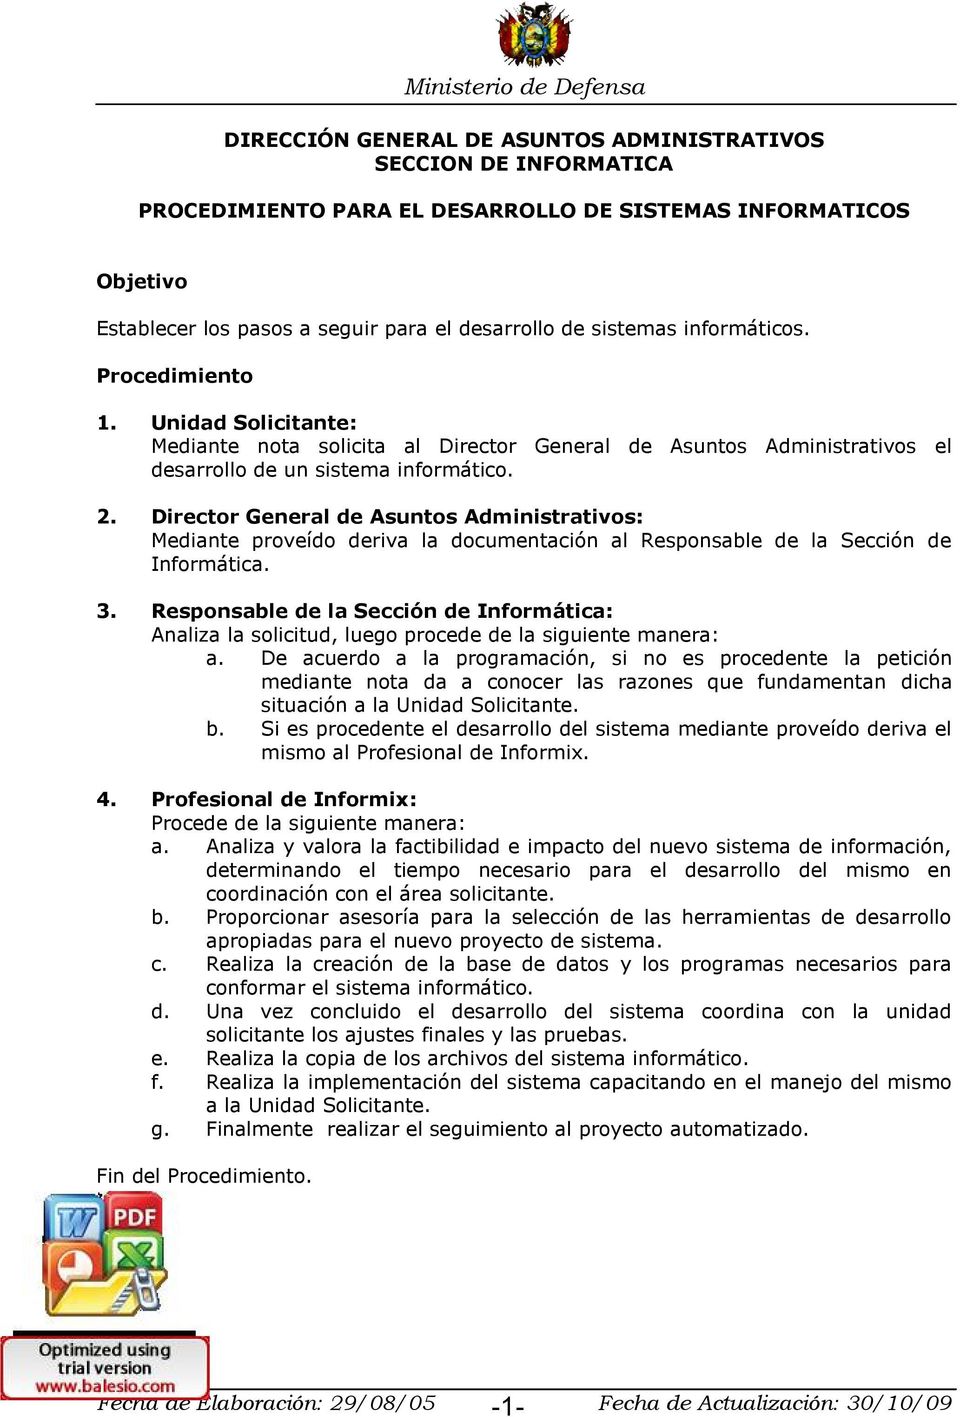 Director General de Asuntos Administrativos: Mediante proveído deriva la documentación al Responsable de la Sección de Informática. 3.